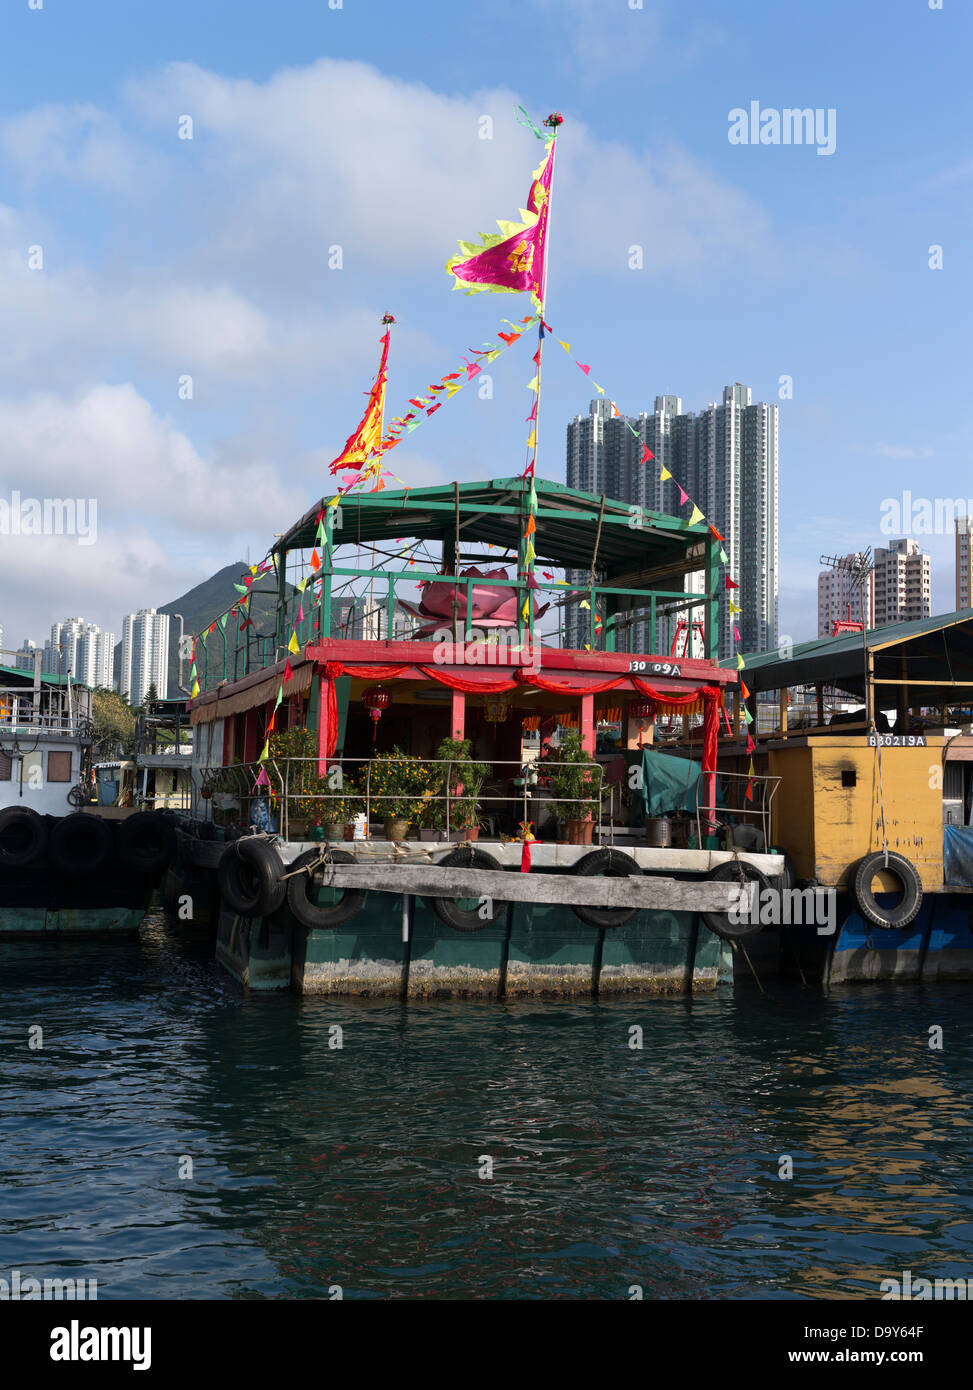 dh nouvel an chinois ABERDEEN HONG KONG Port de la famille junk bateau avec décorations drapeaux maison junks péniche village flottant port bateau de pêche Banque D'Images